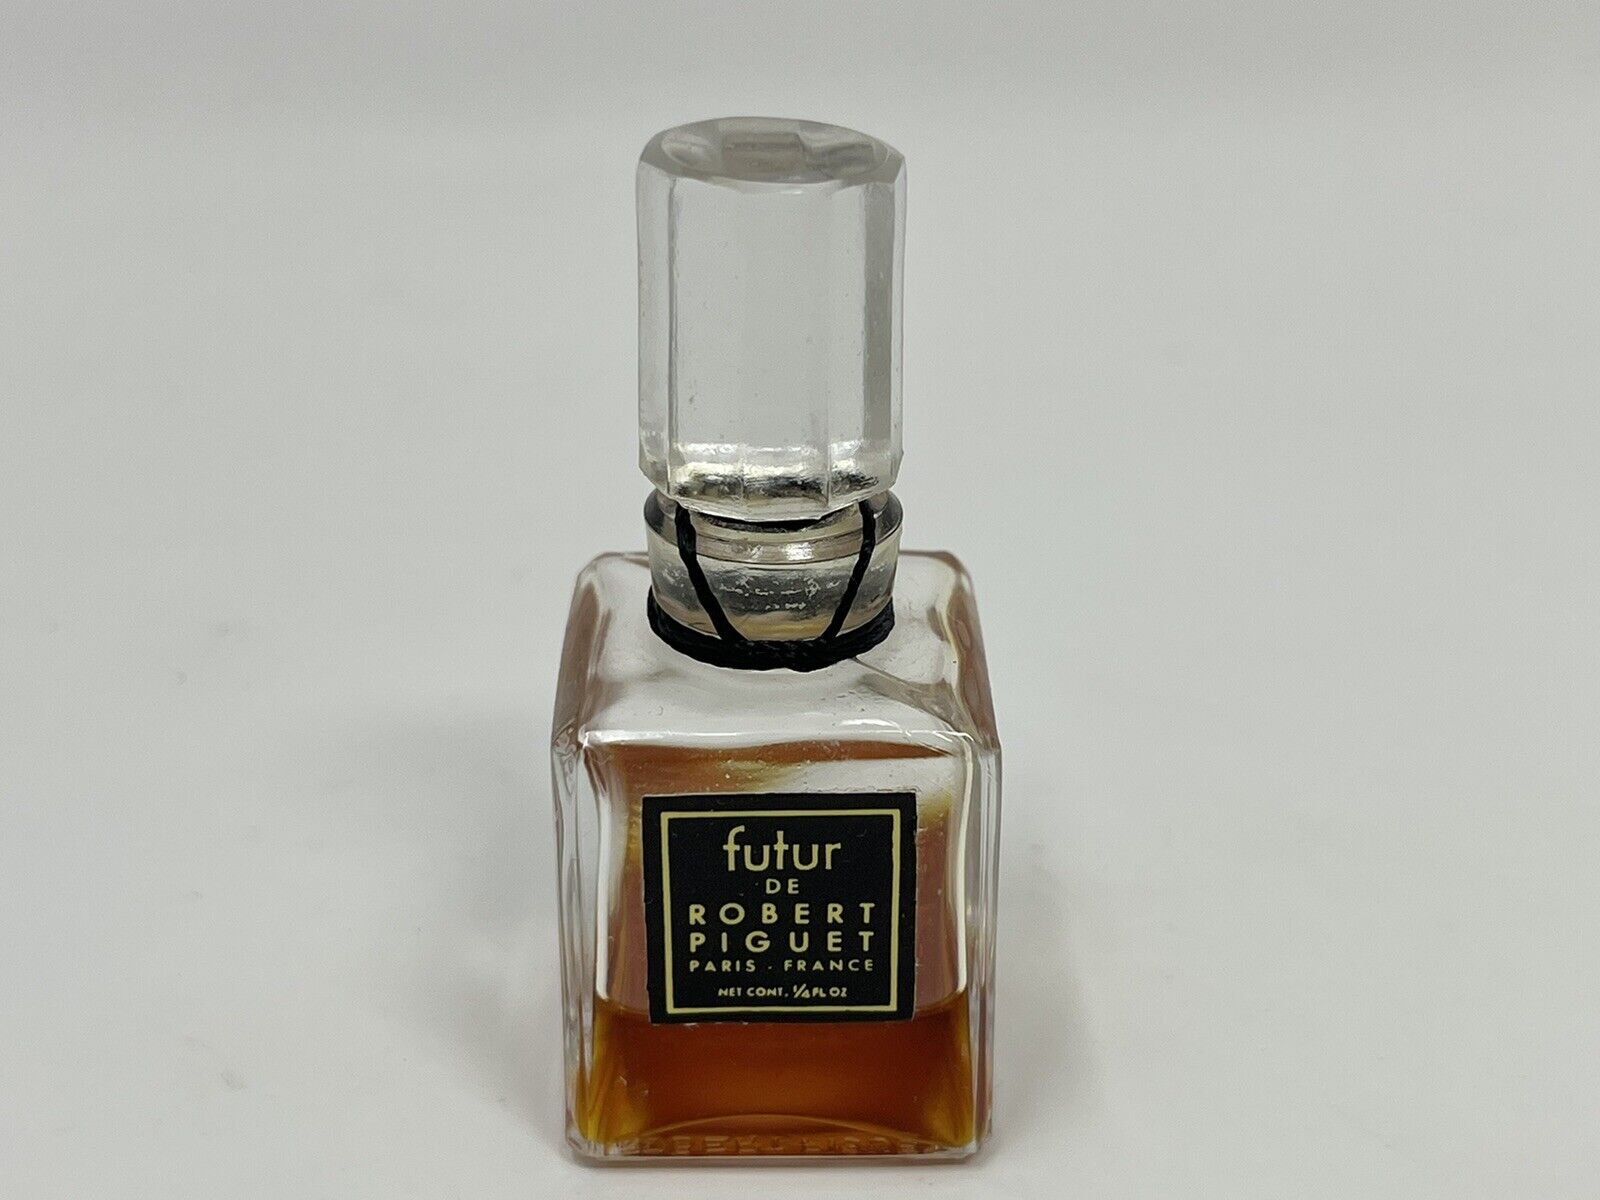 1940s Futur De Robert Piguet Mini Perfume 1/4oz Bottle About 30% Full